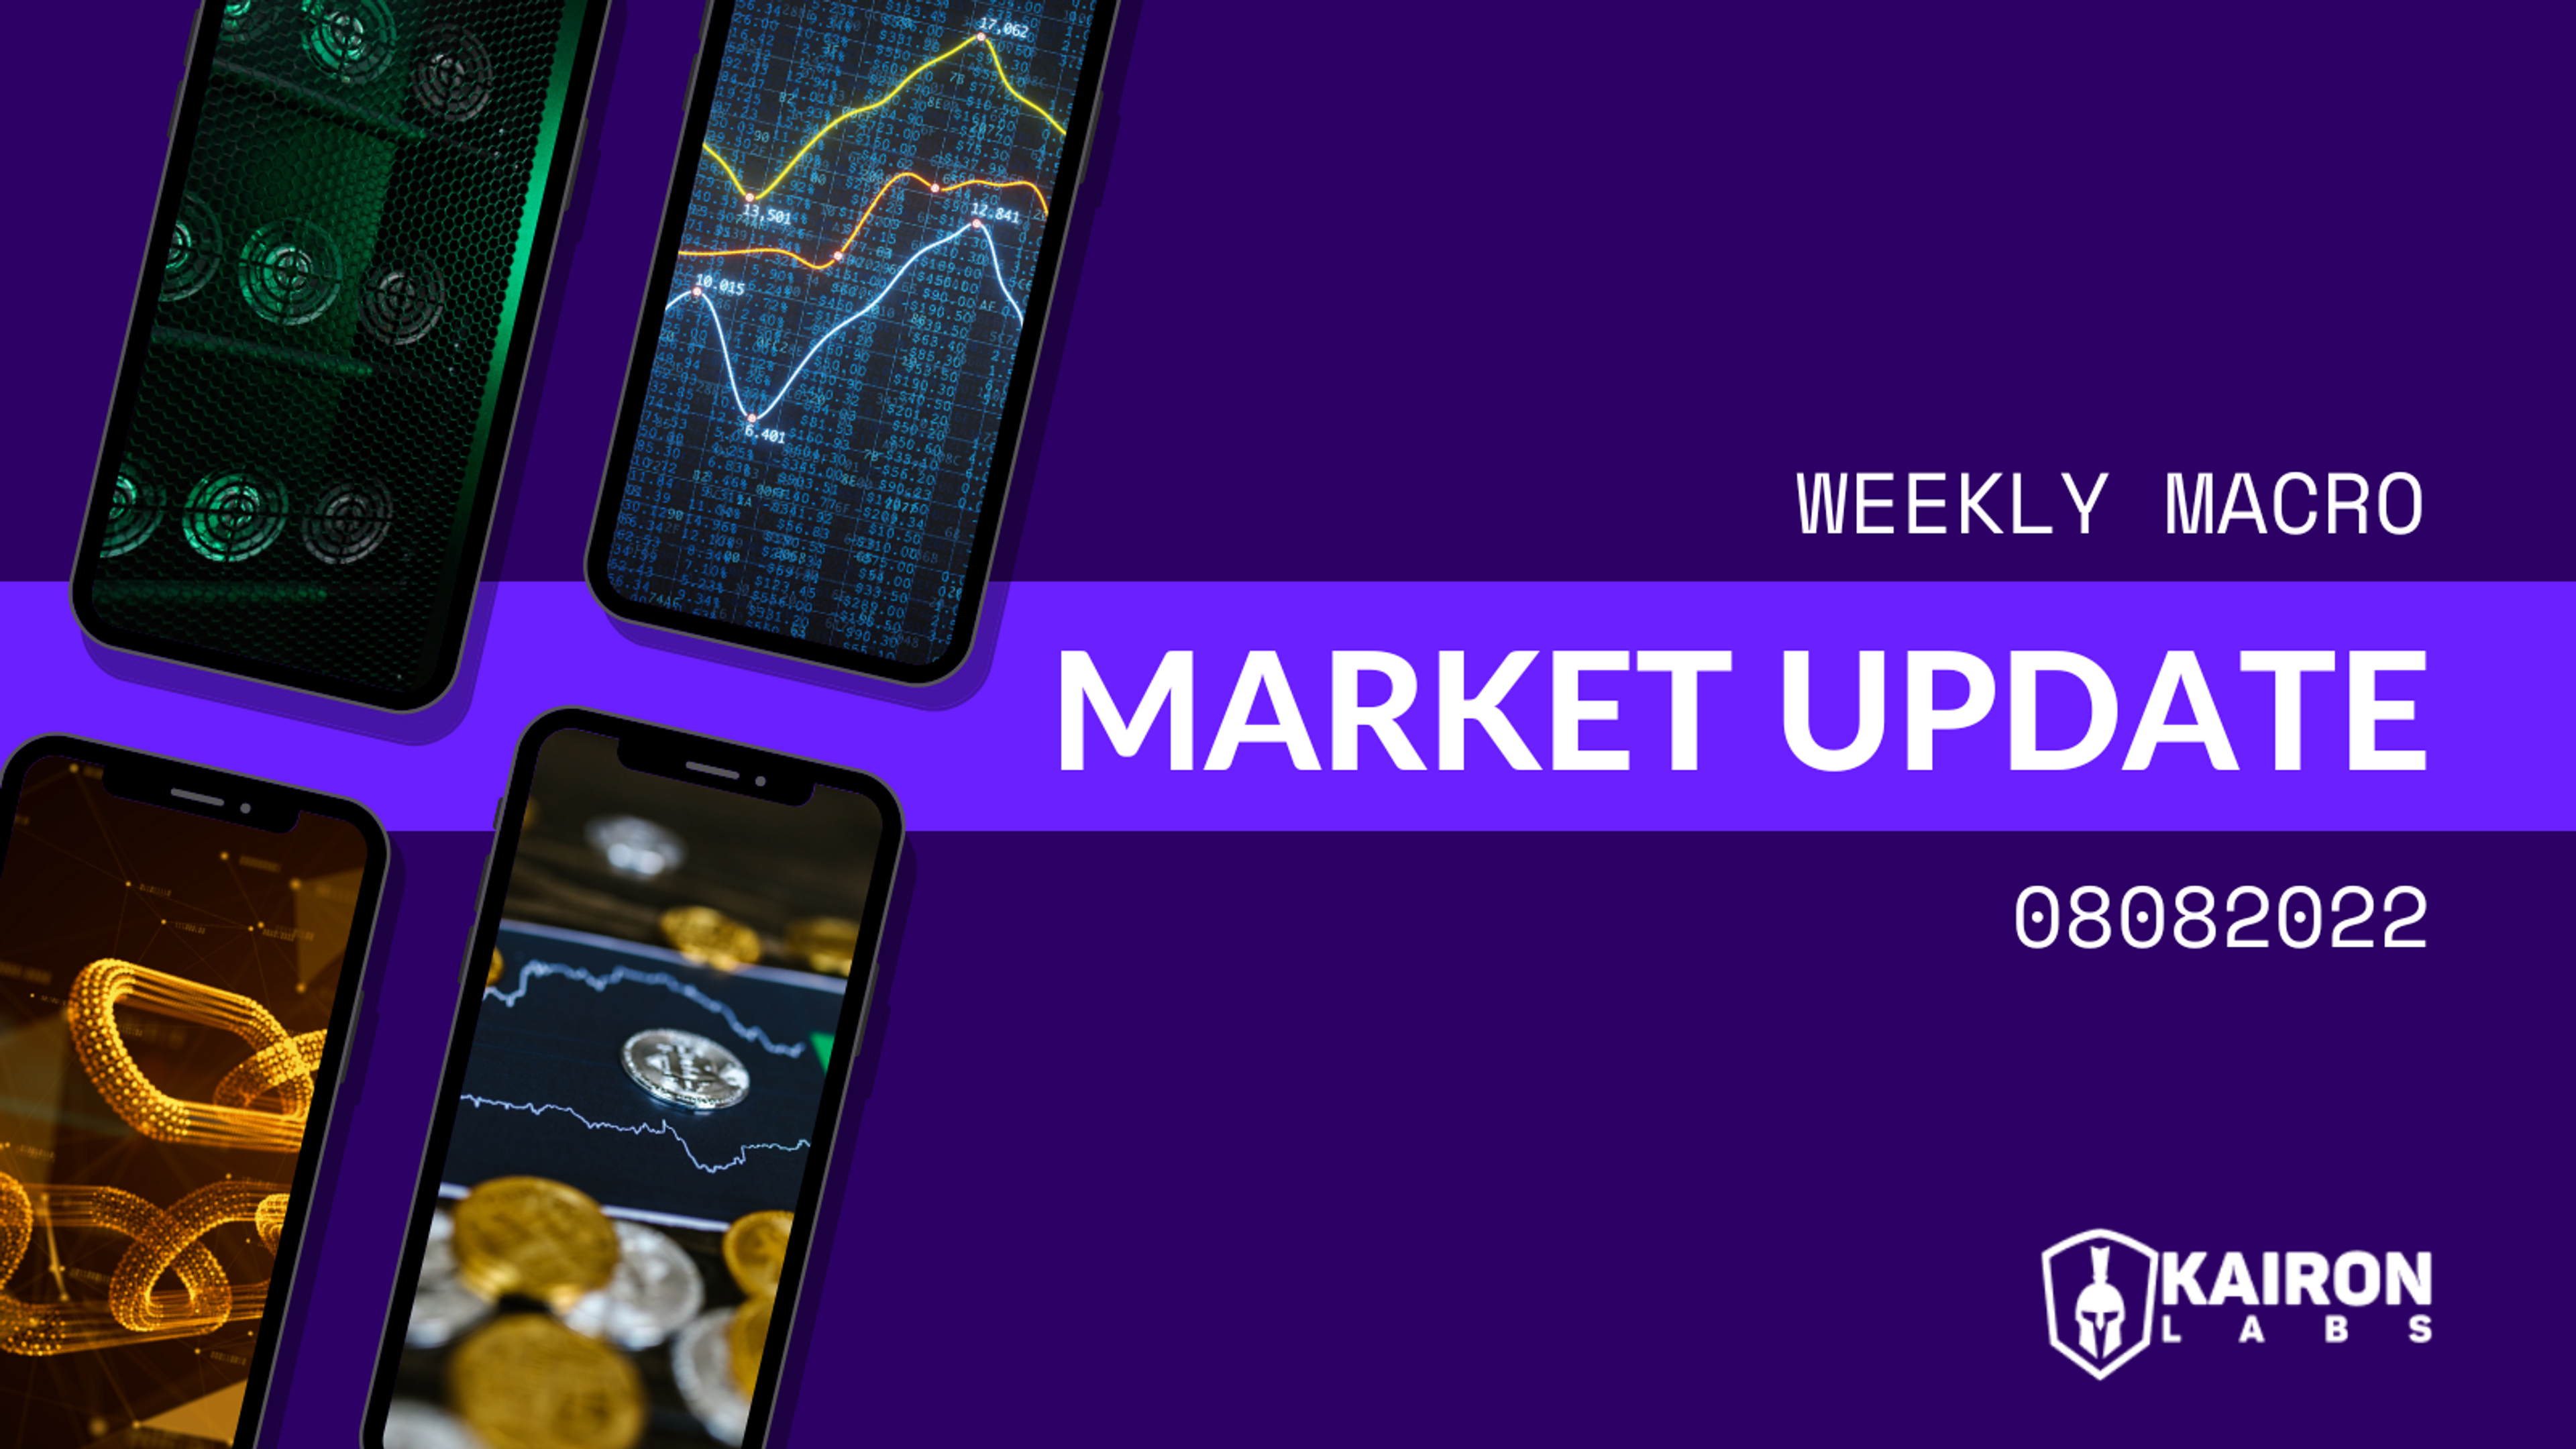 Weekly update_01_08_macro market